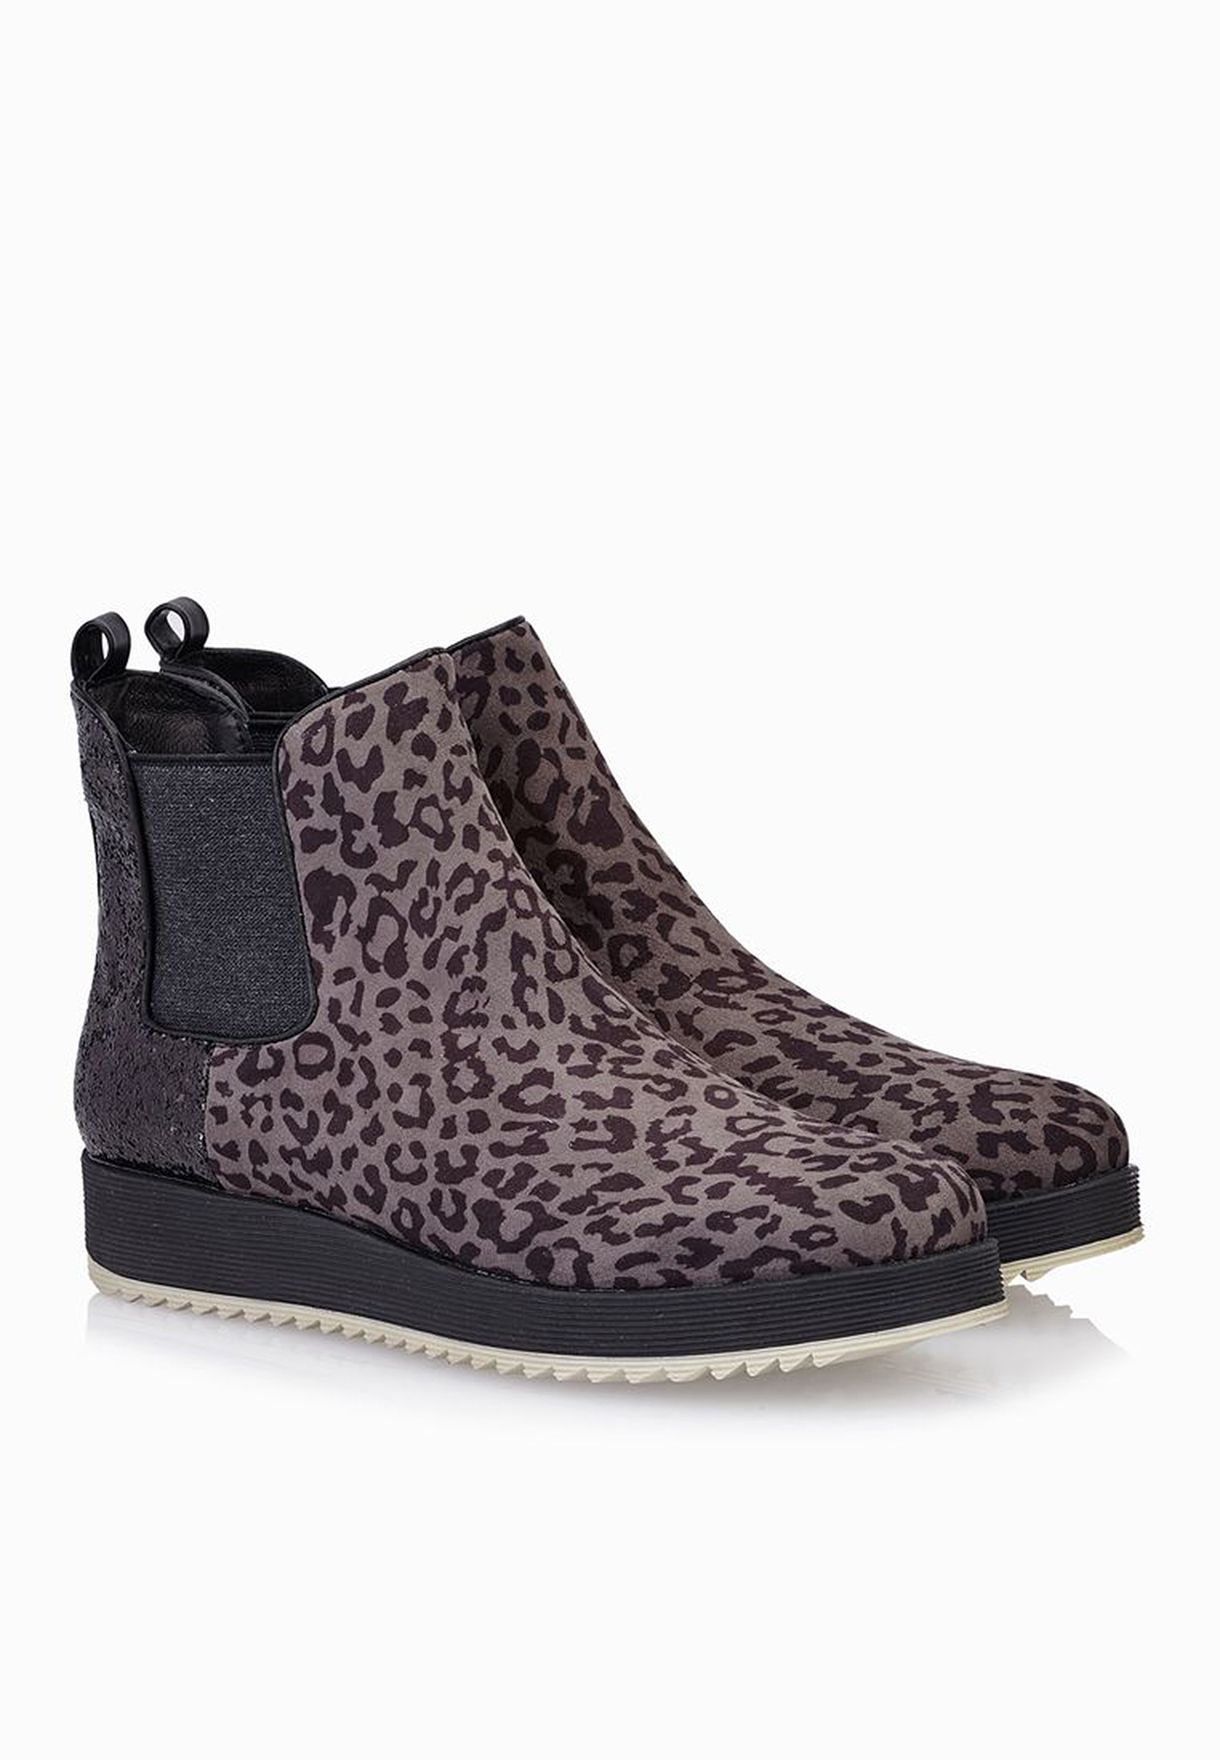 la strada leopard boots